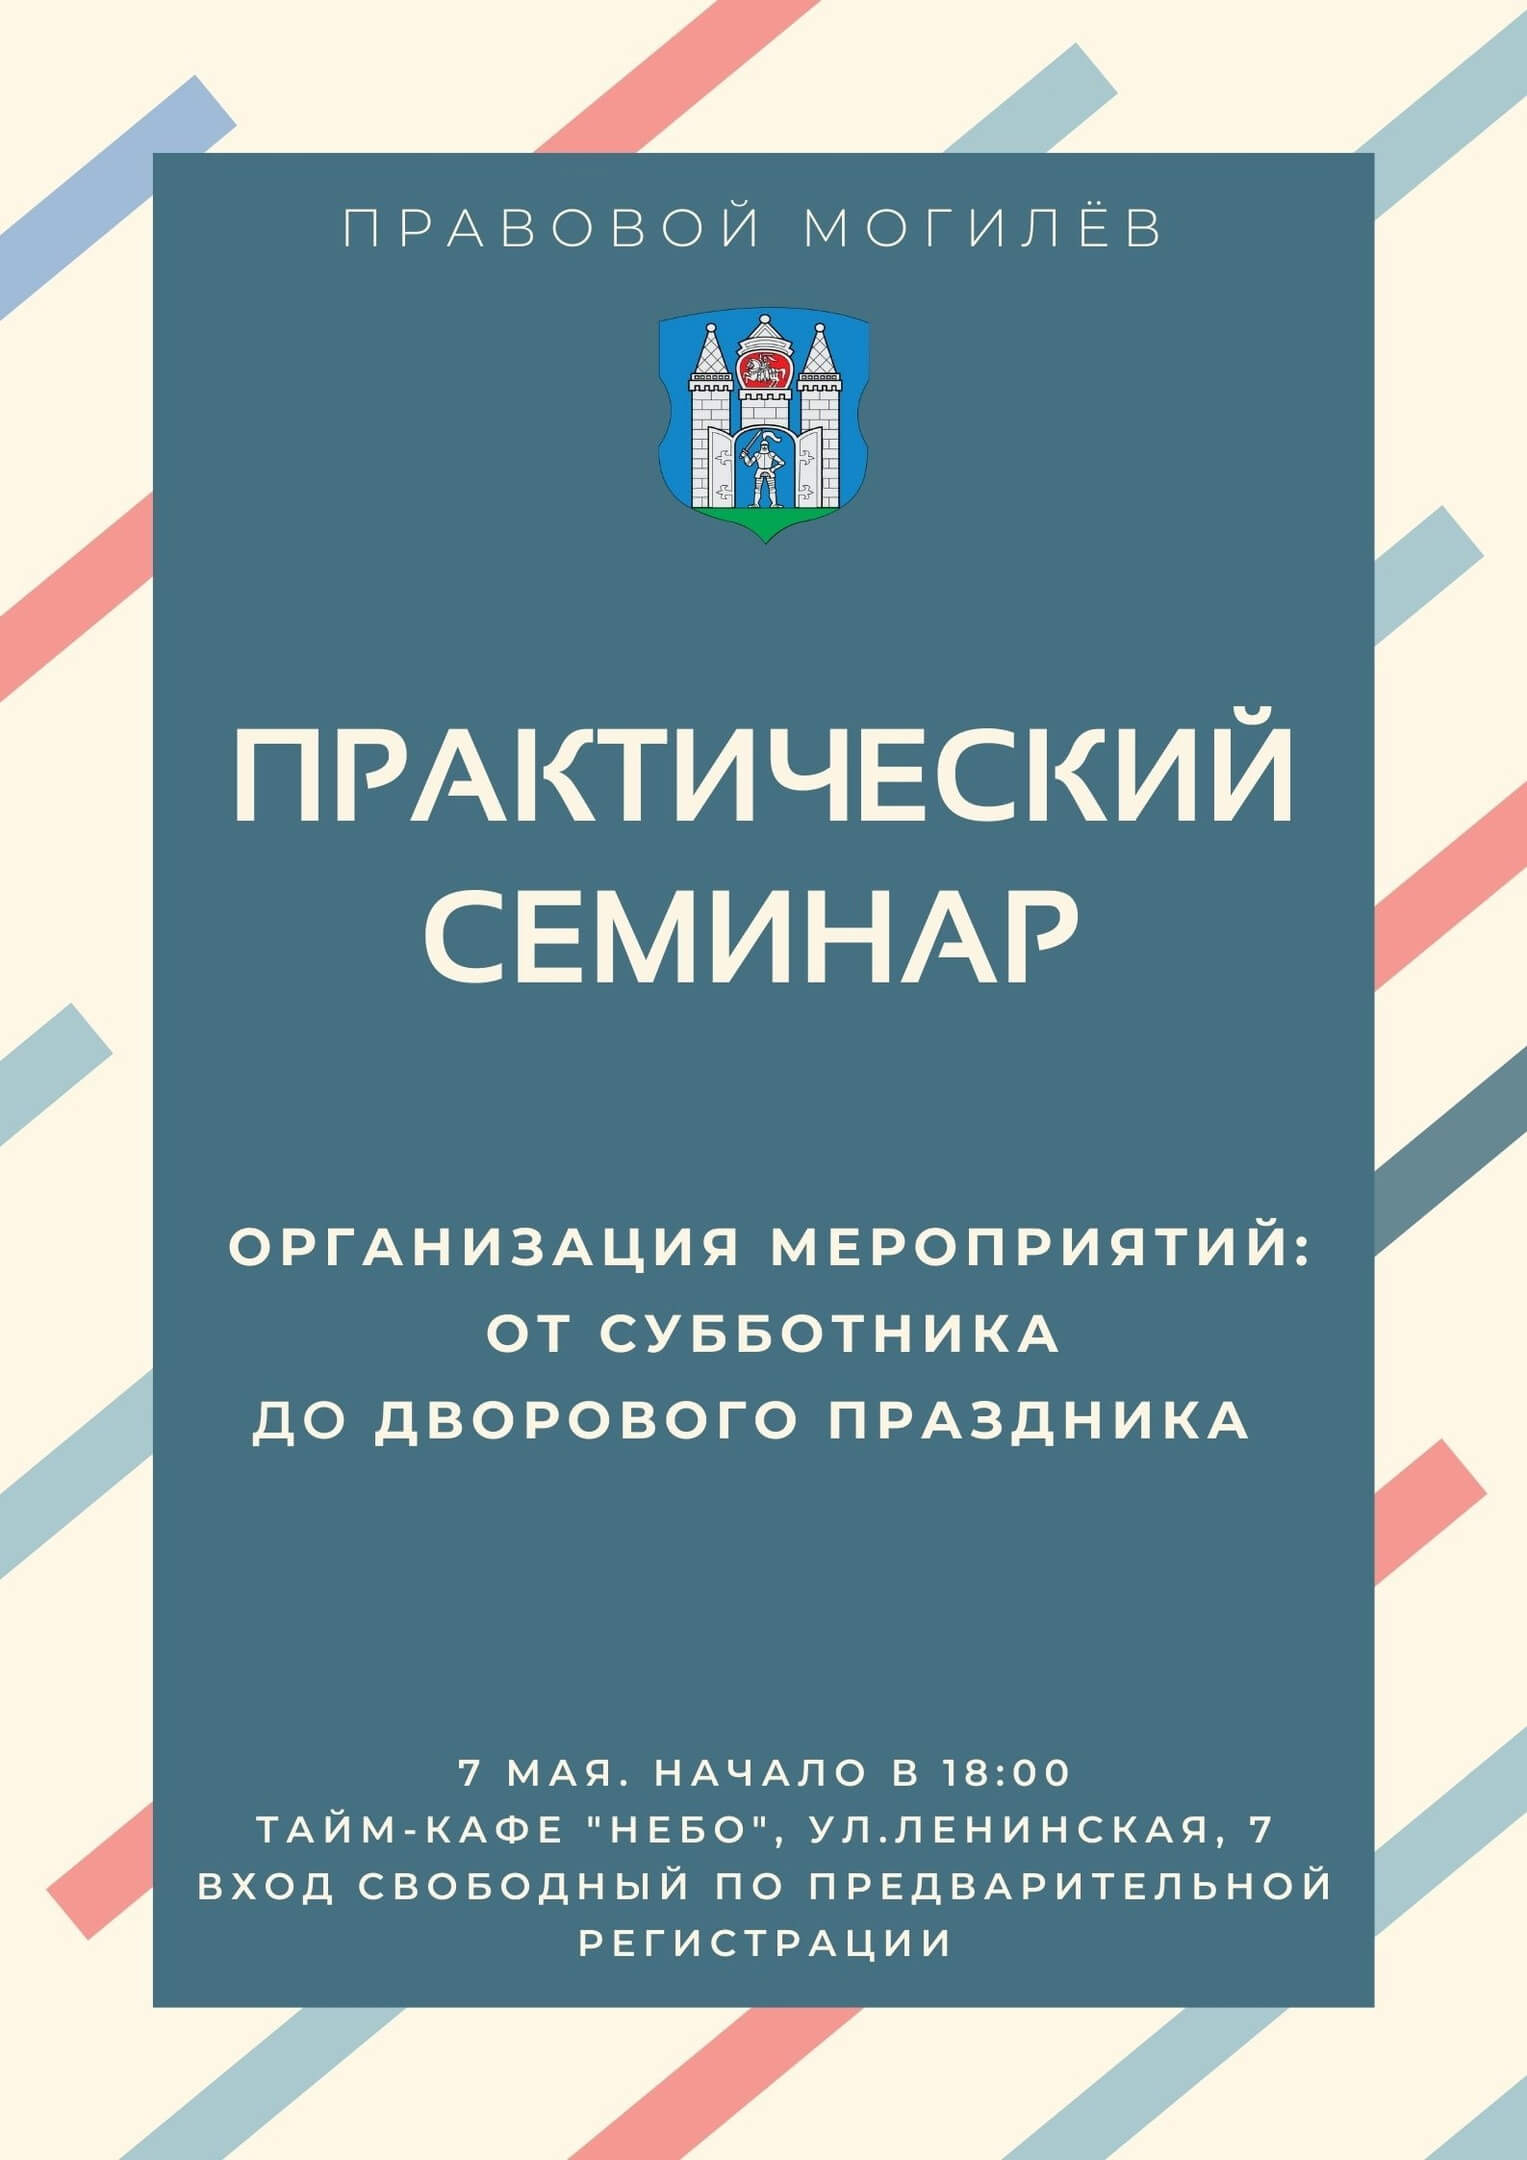 Практический семинар "Организация мероприятий: от субботника до дворового праздника" пройдёт в Могилёве